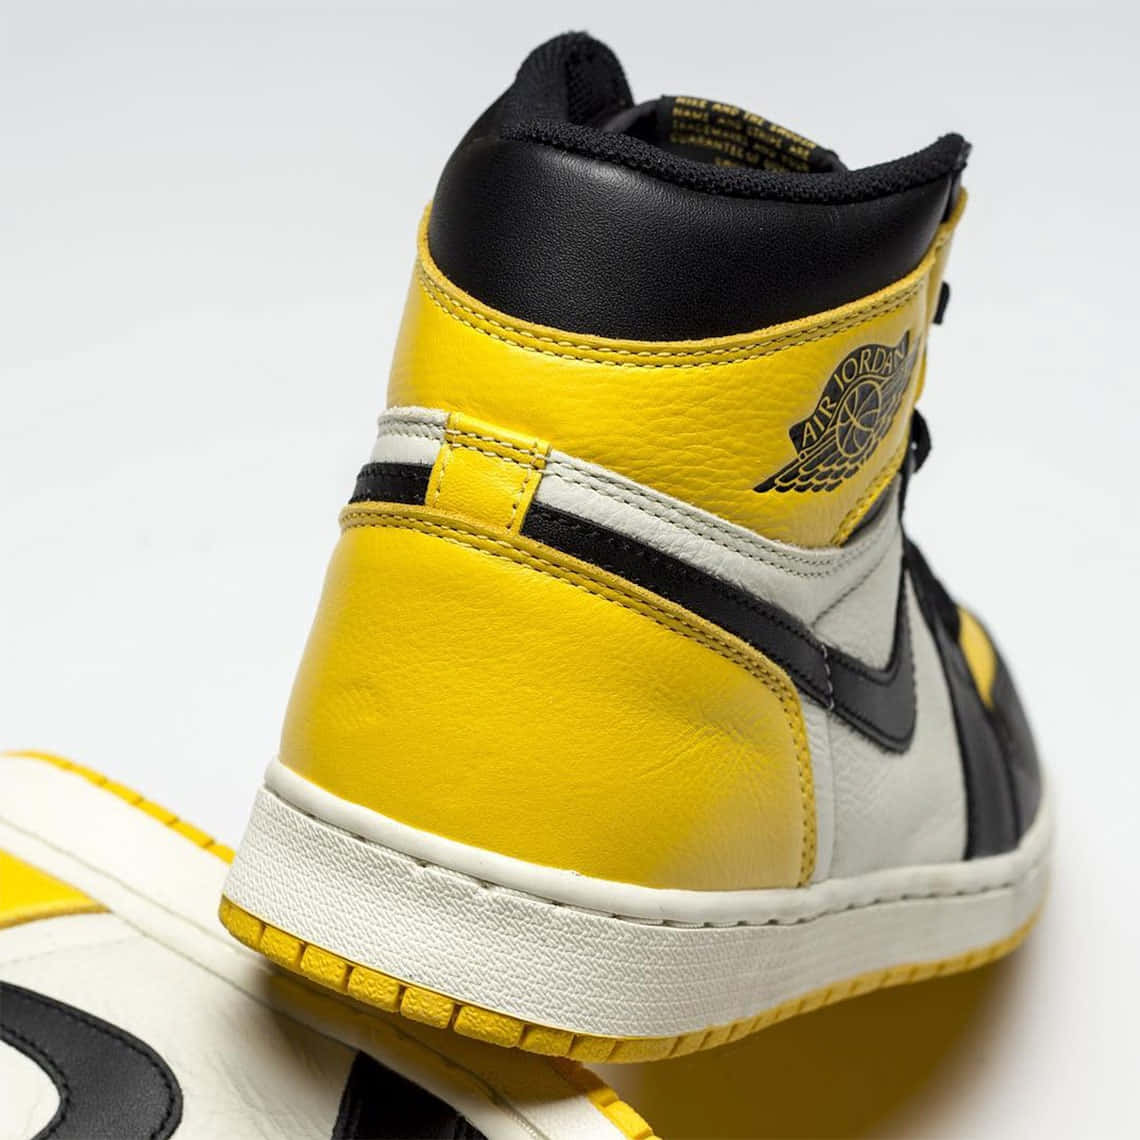 Hop ind i stil med denne signatur gule Jordan fodtøj! Wallpaper